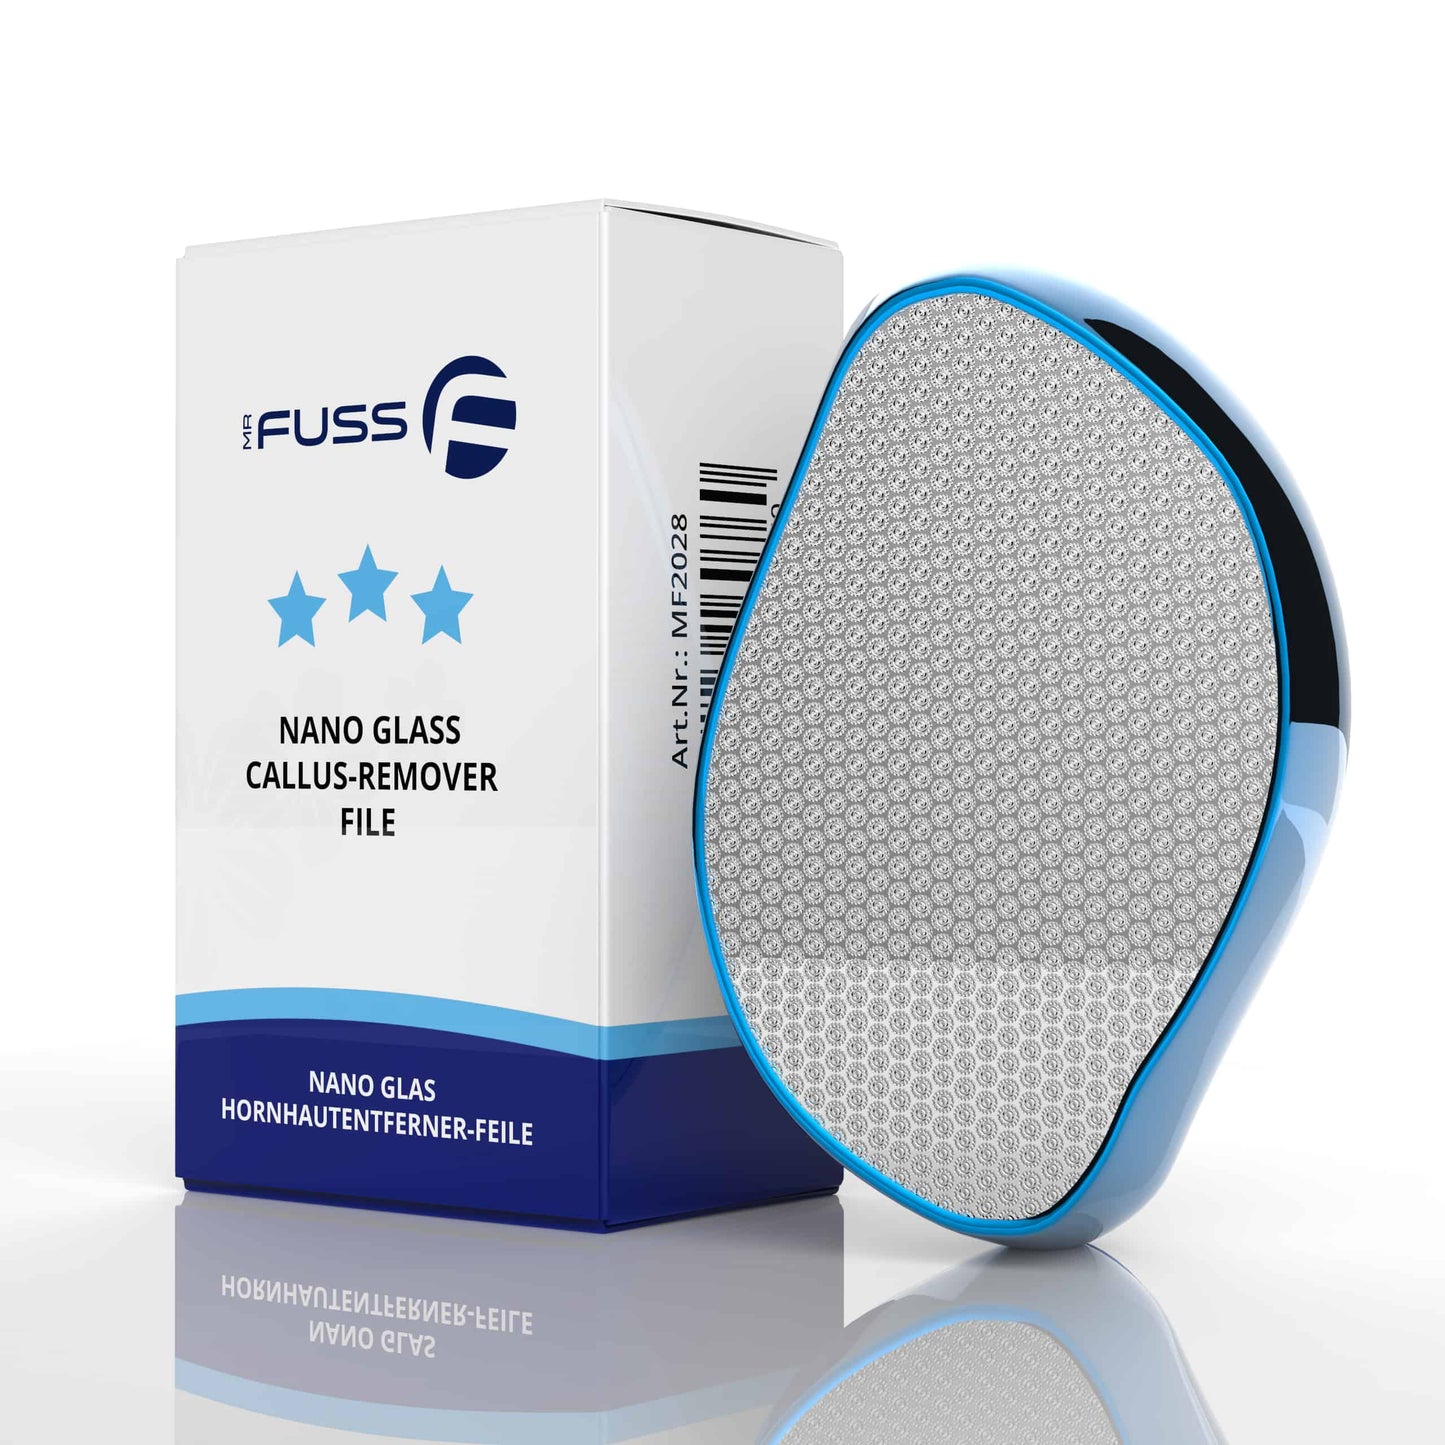 Mr. Fuss® - Nano Glass - 2 in 1 Dead Skin Remover File